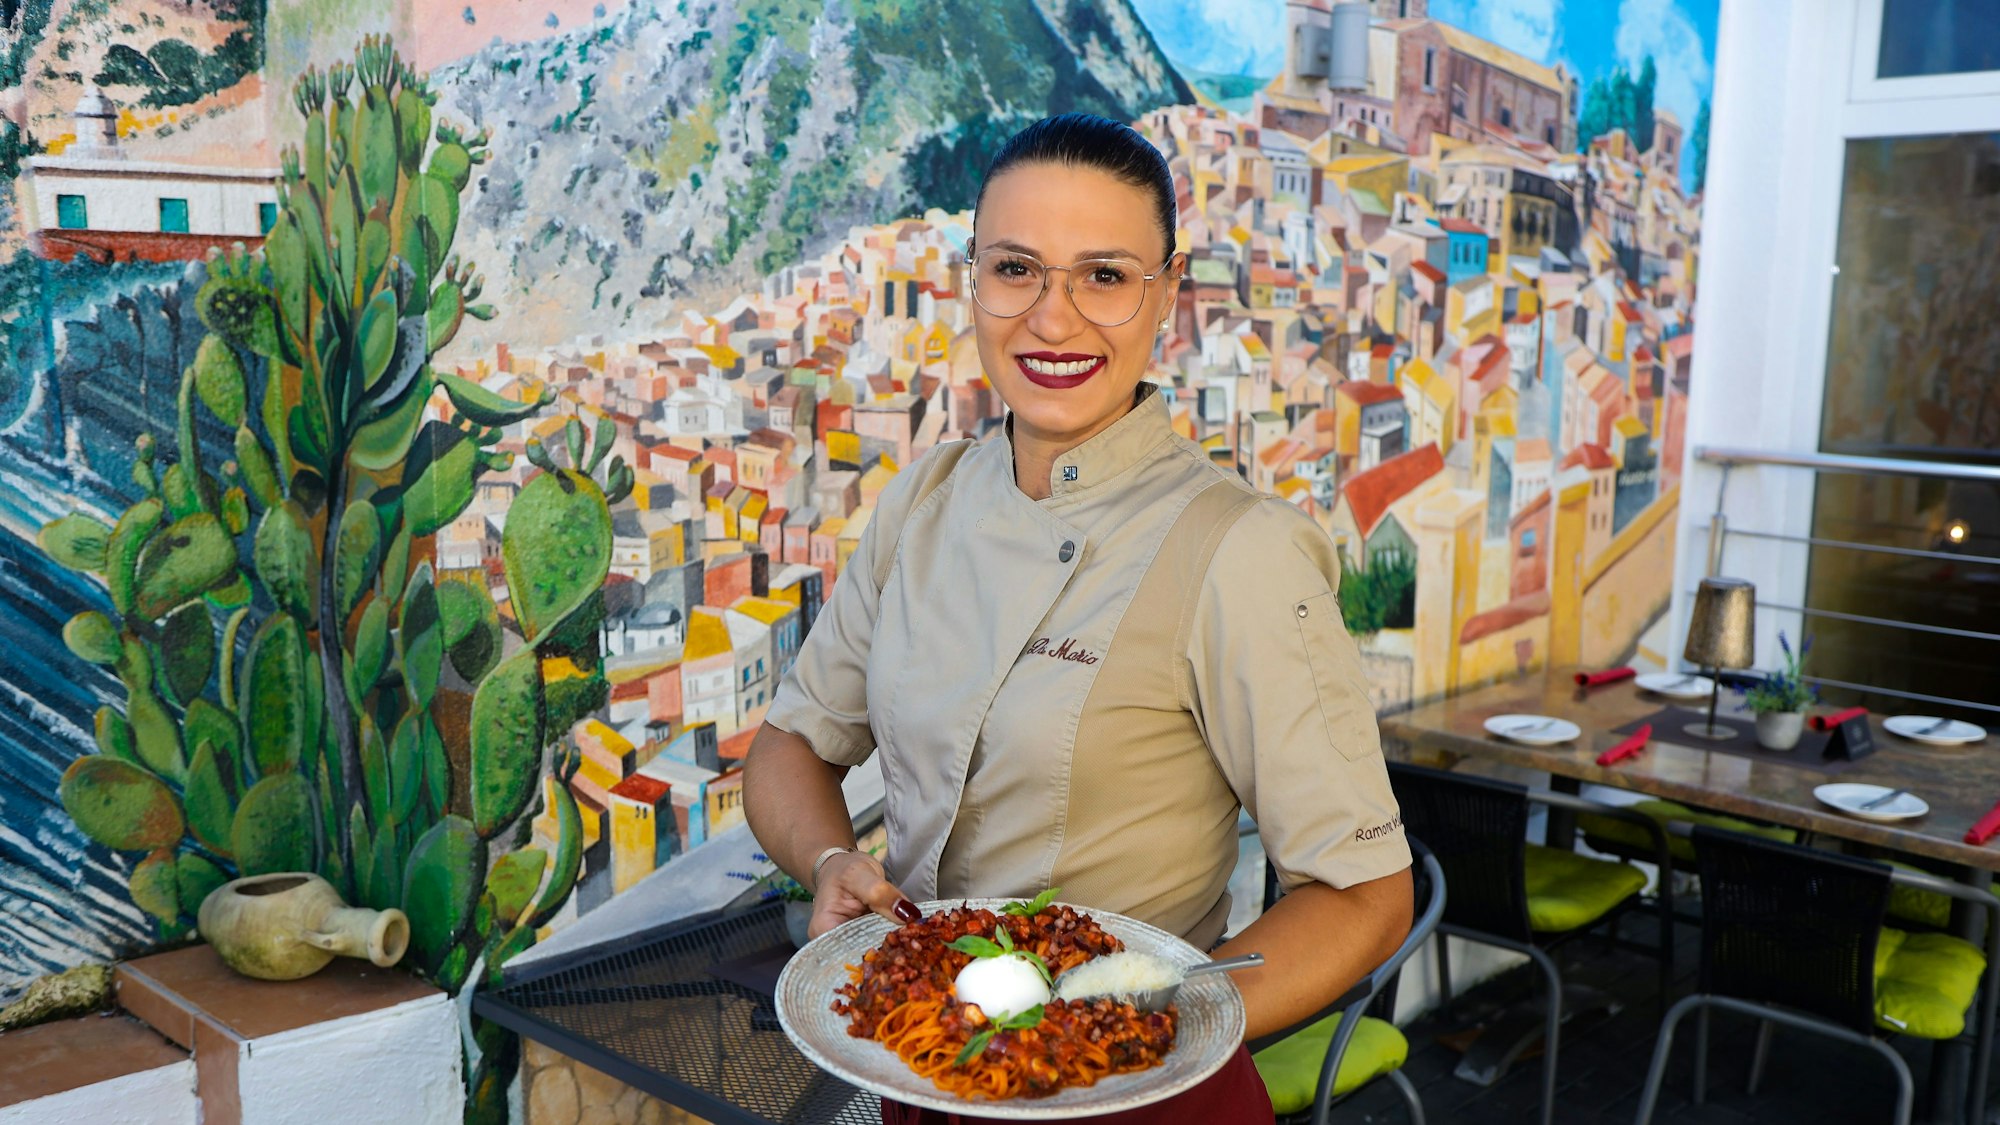 Köchen Ramona Vella-Bianchettino zeigt im Vordergrund ein Pasta-Gericht, im Hintergrund ein Wandbild der sizilianischen Stadt Siculiana.